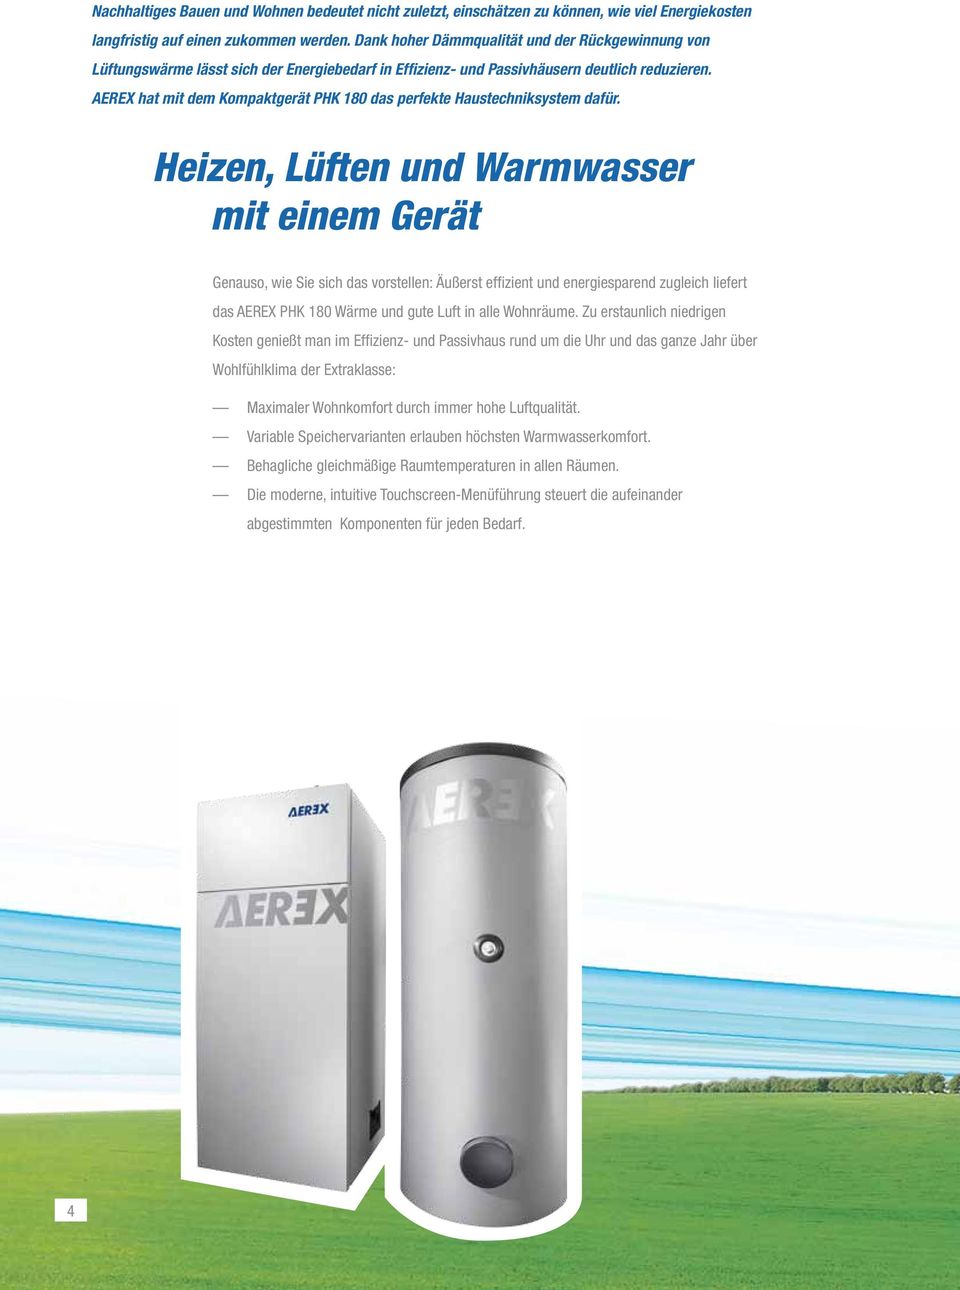 AEREX hat mit dem Kompaktgerät PHK 180 das perfekte Haustechniksystem dafür.